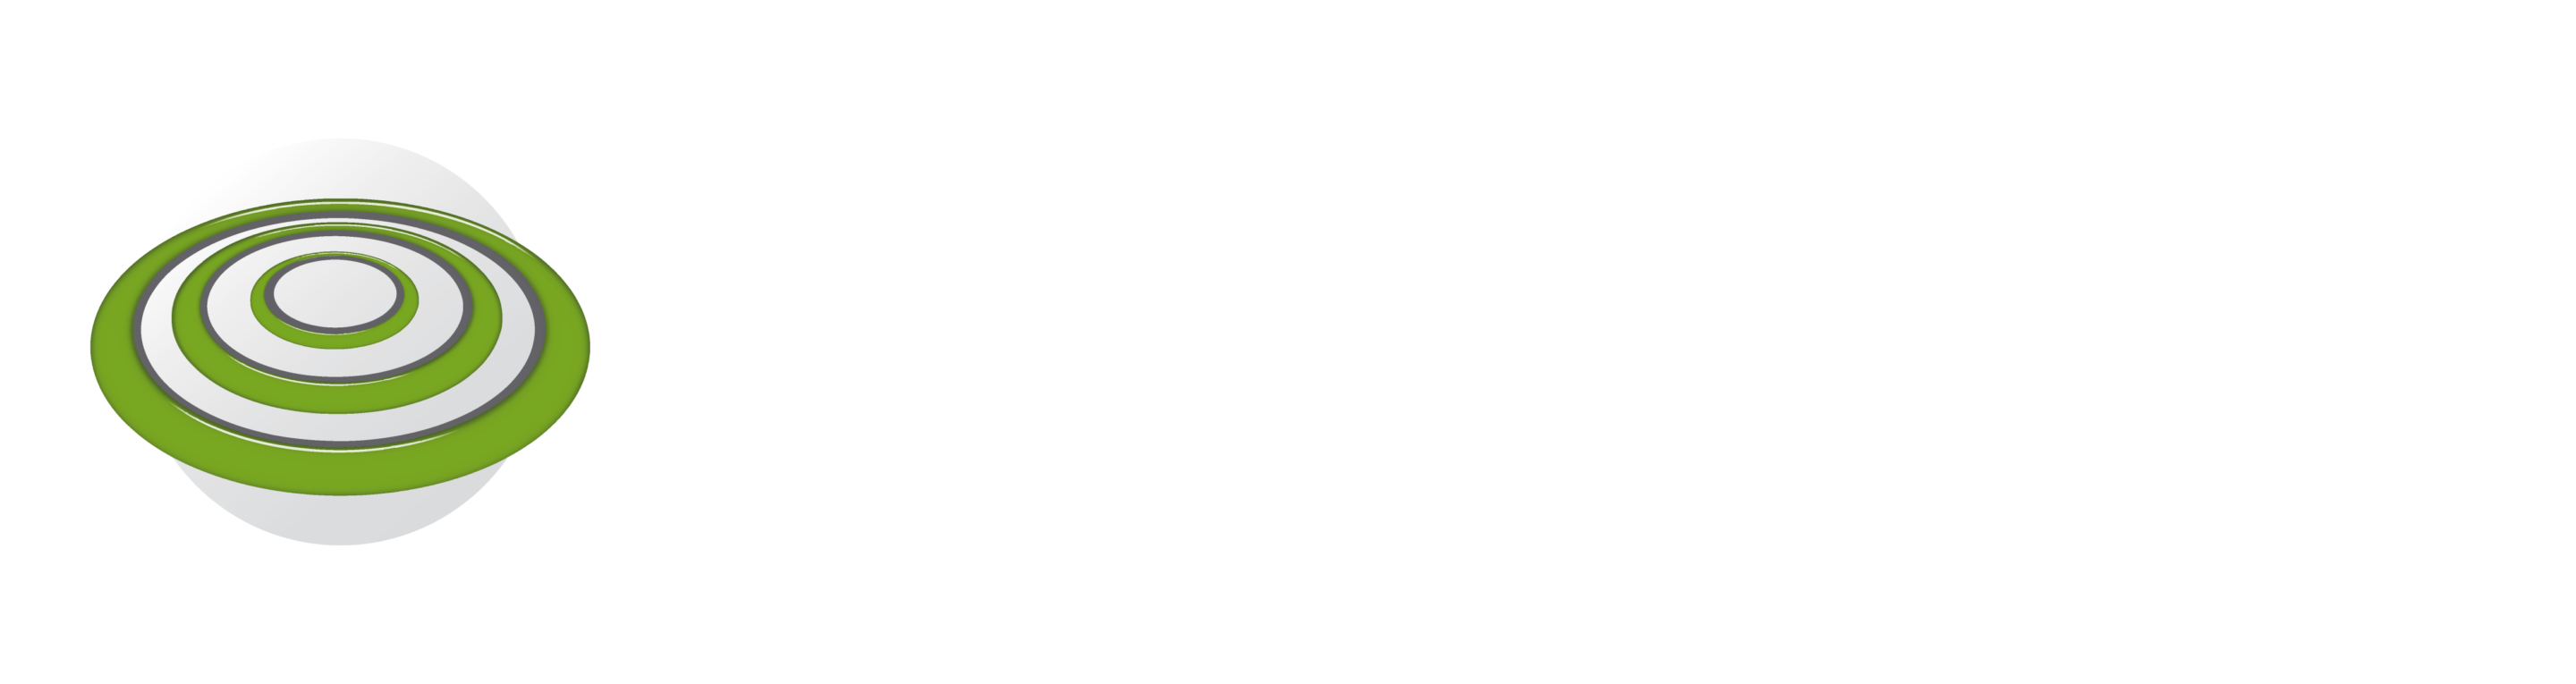 Gravotouch_logo_fondfonce